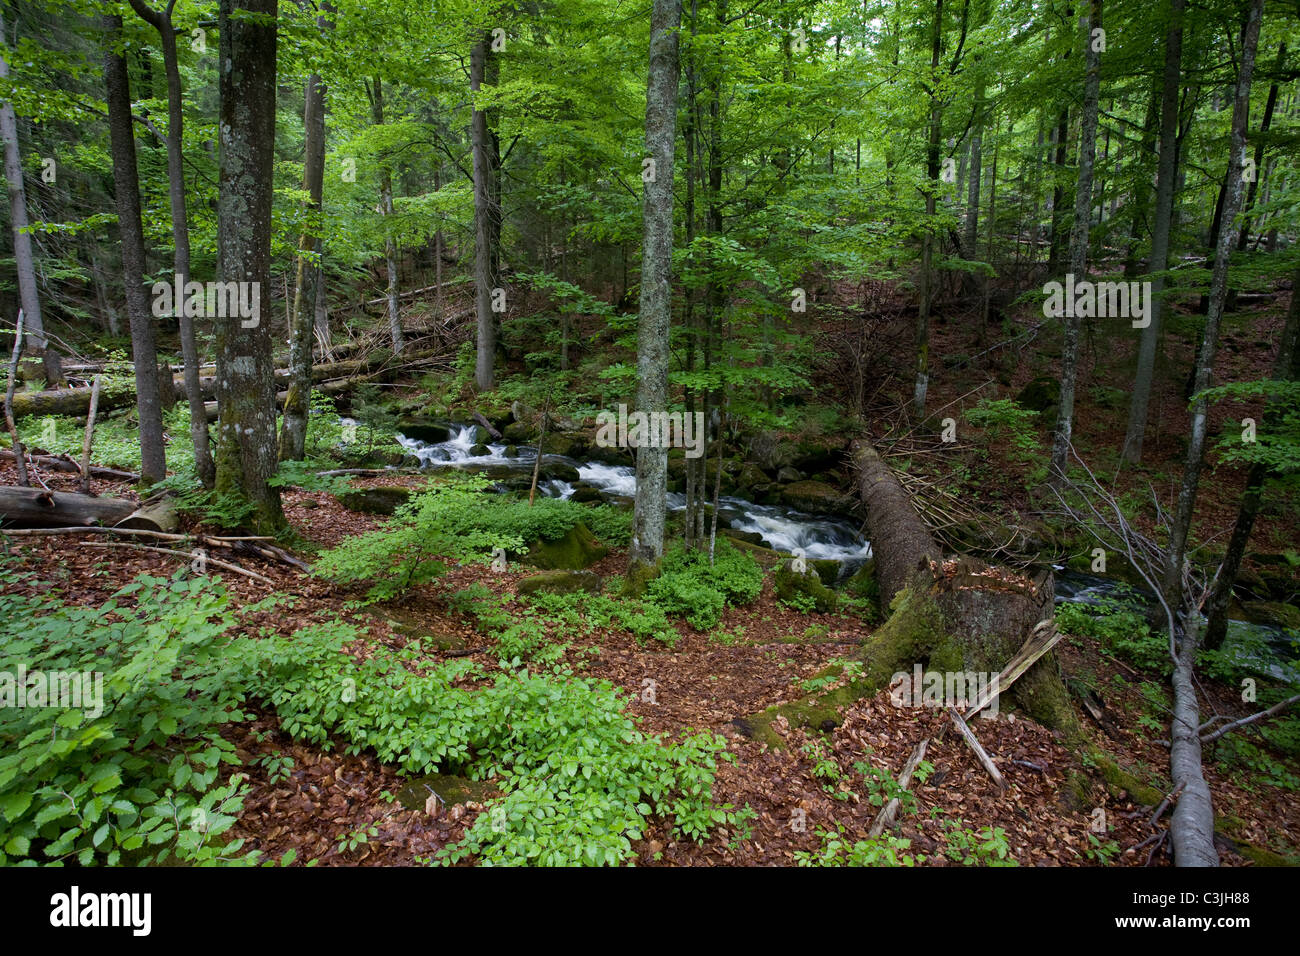 Bach im Nationalpark Bayerischer Wald, Creek nel parco nazionale della foresta bavarese, Deutschland, Germania Foto Stock